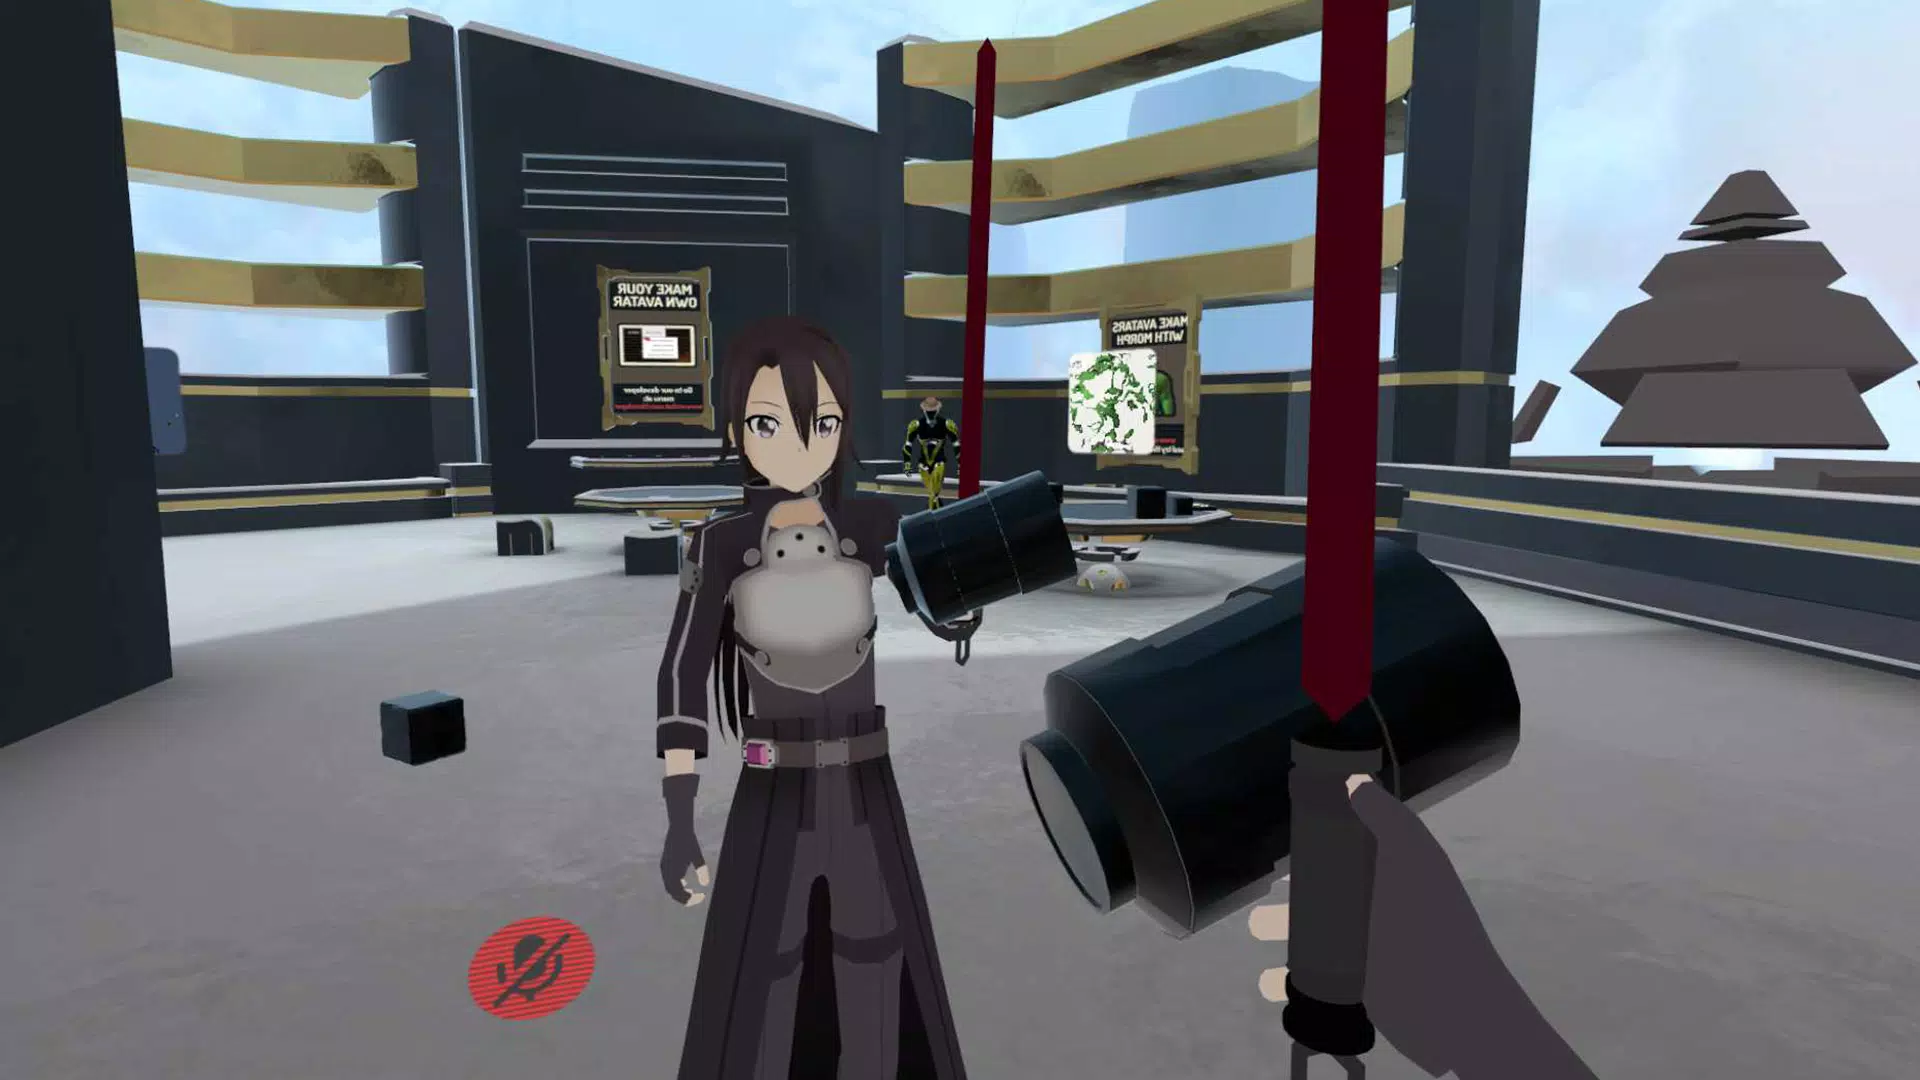 Tải xuống avatar Anime VRChat trên Android và khám phá thế giới ảo tuyệt vời đầy sáng tạo. Bạn sẽ được tham gia thế giới của các nhân vật anime yêu thích và tạo ra những kết nối vô hạn với những người chơi khác.